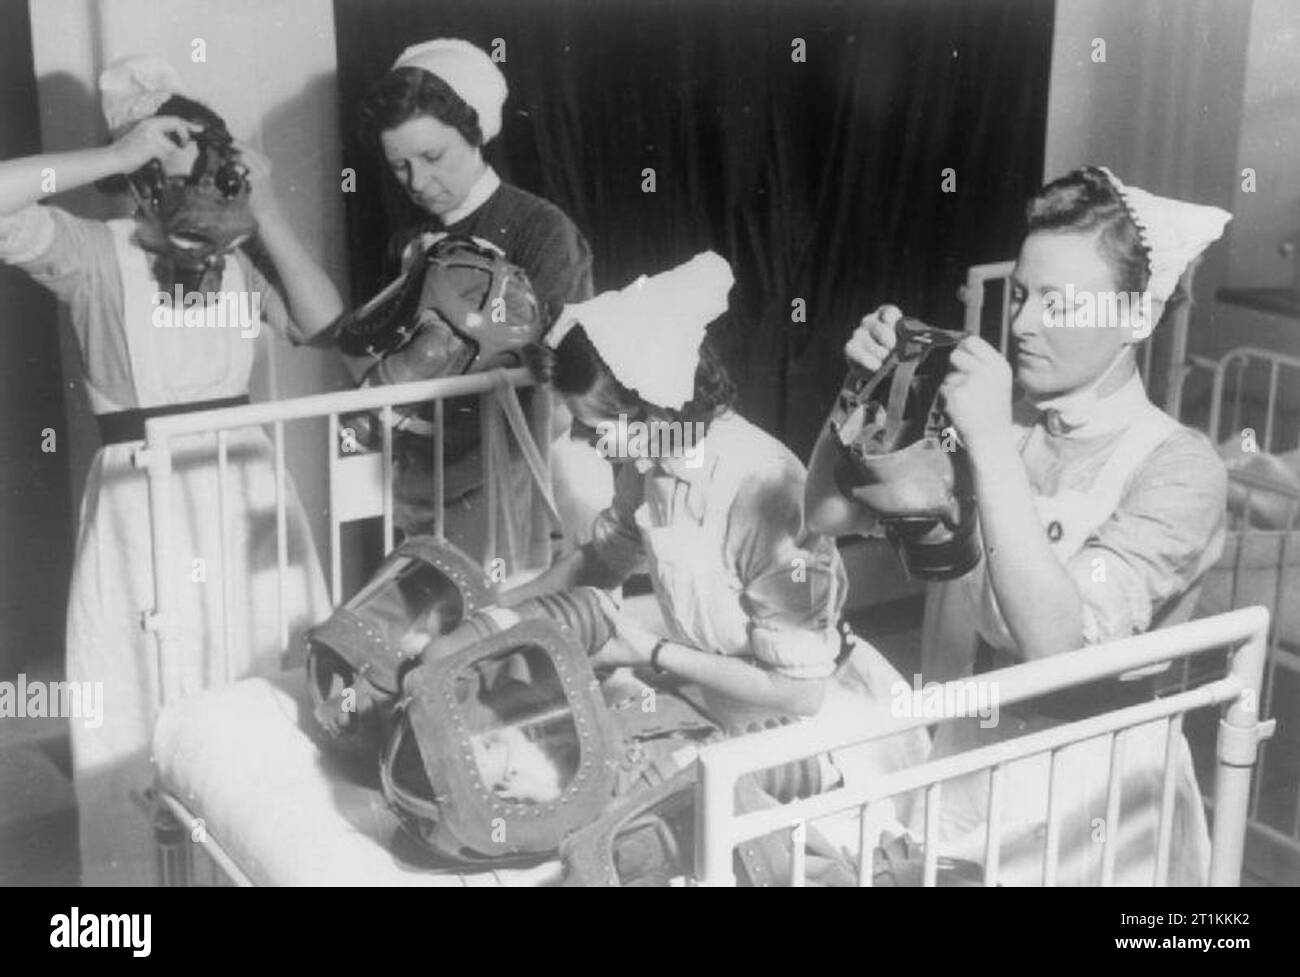 Gas Bohren in einem Londoner Krankenhaus - Gasmasken für Babys sind getestet, England, 1940 Drei Krankenschwestern ihre Gasmasken, während eine vierte Krankenschwester die Gasmasken von zwei Babys, die in der Wiege vor ihr besucht. Erwachsene wurden erklärt, um auf ihre eigenen Gasmaske vor dem Helfen, Kinder oder andere Erwachsene mit Ihnen zu setzen. Stockfoto